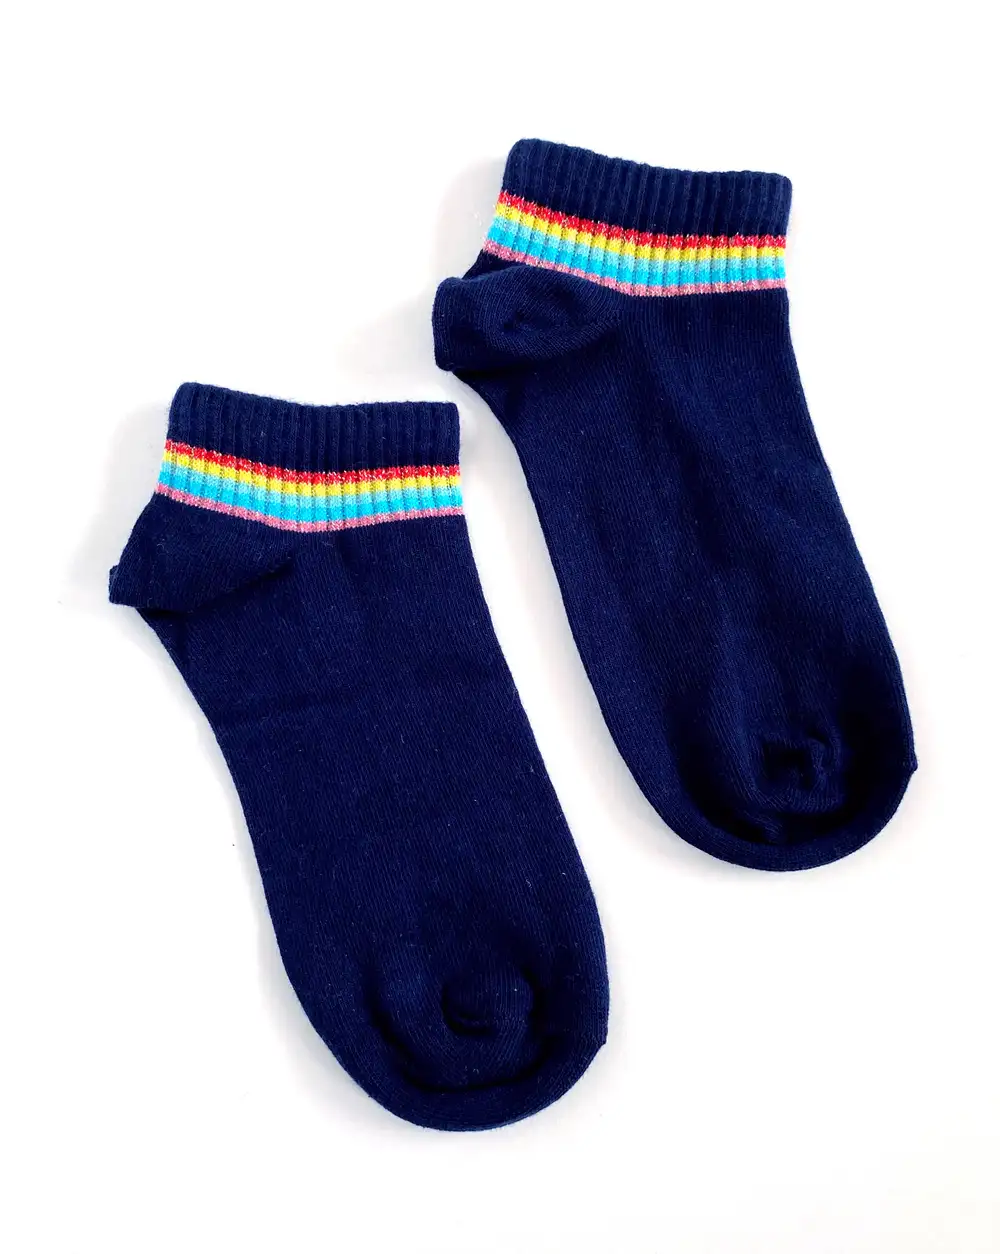 Çorap N331 - Lacivert Renkli Çizgili Batik Çorap